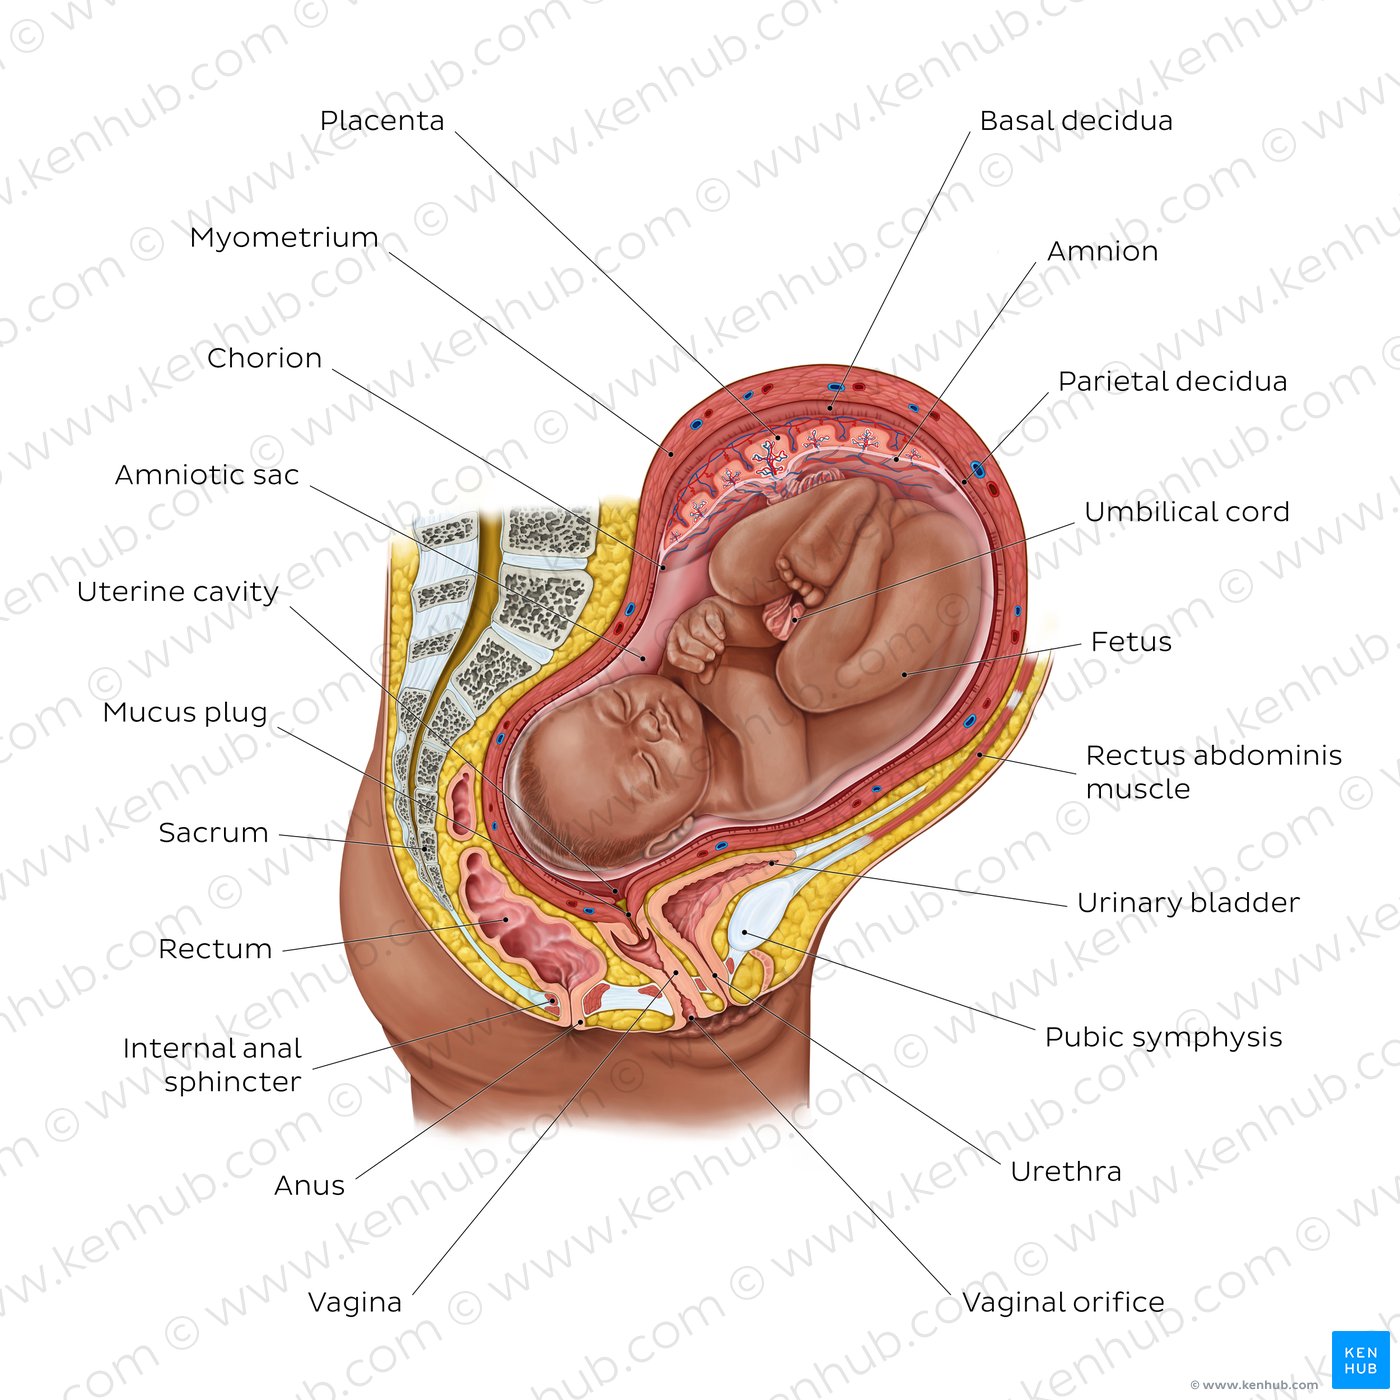 Fetus in utero